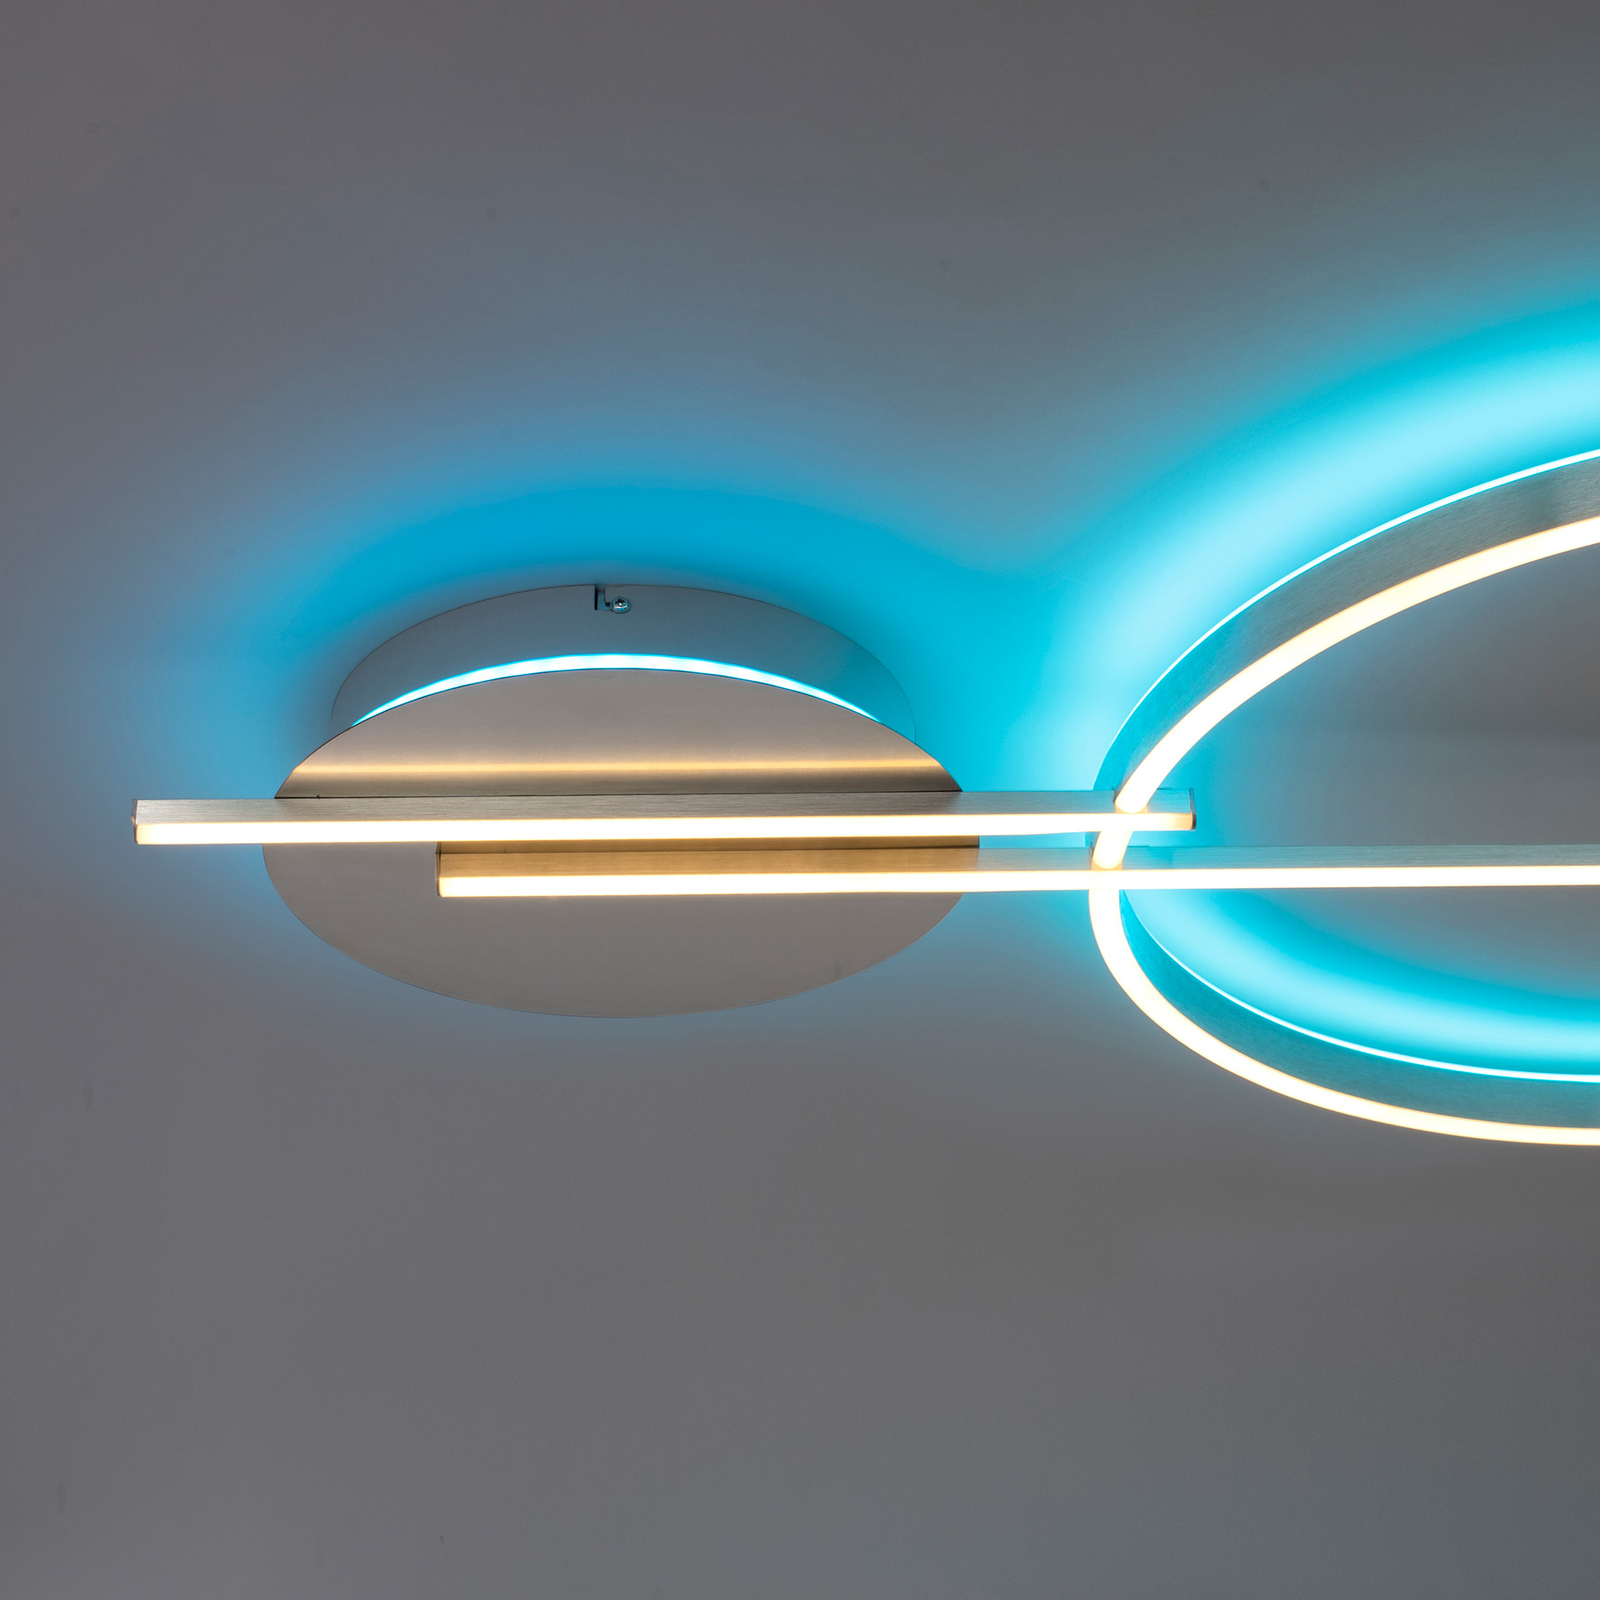 Paul Neuhaus Q-ARKOA LED-Wandlampe, ZigBee-fähig